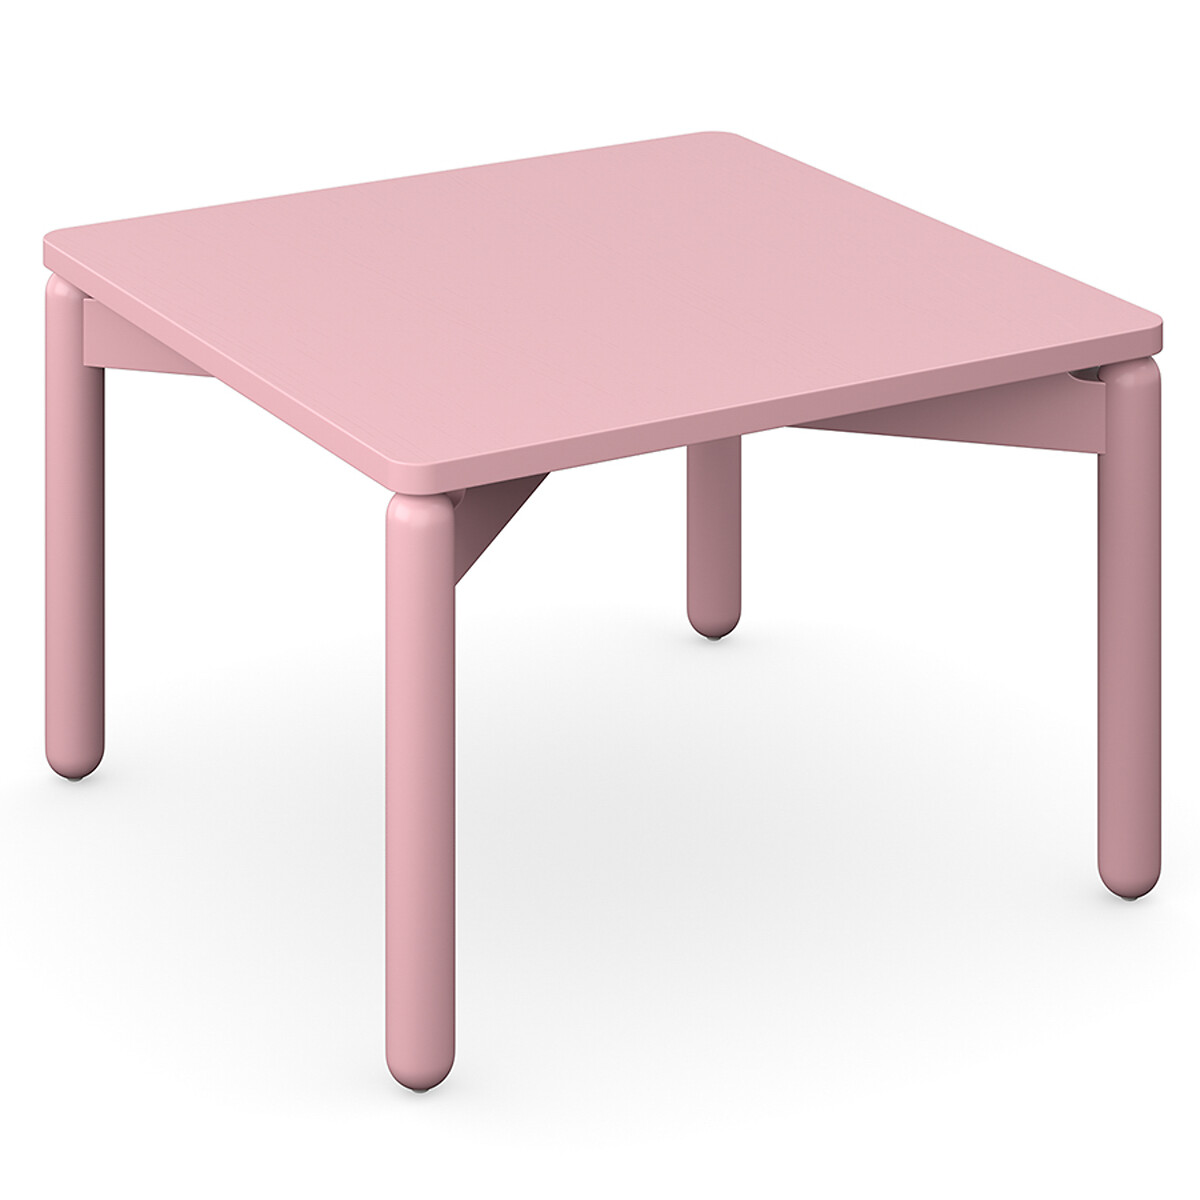 Столик кофейный Saga 60х60 см  2 персоны розовый LaRedoute, размер 2 персоны - фото 3